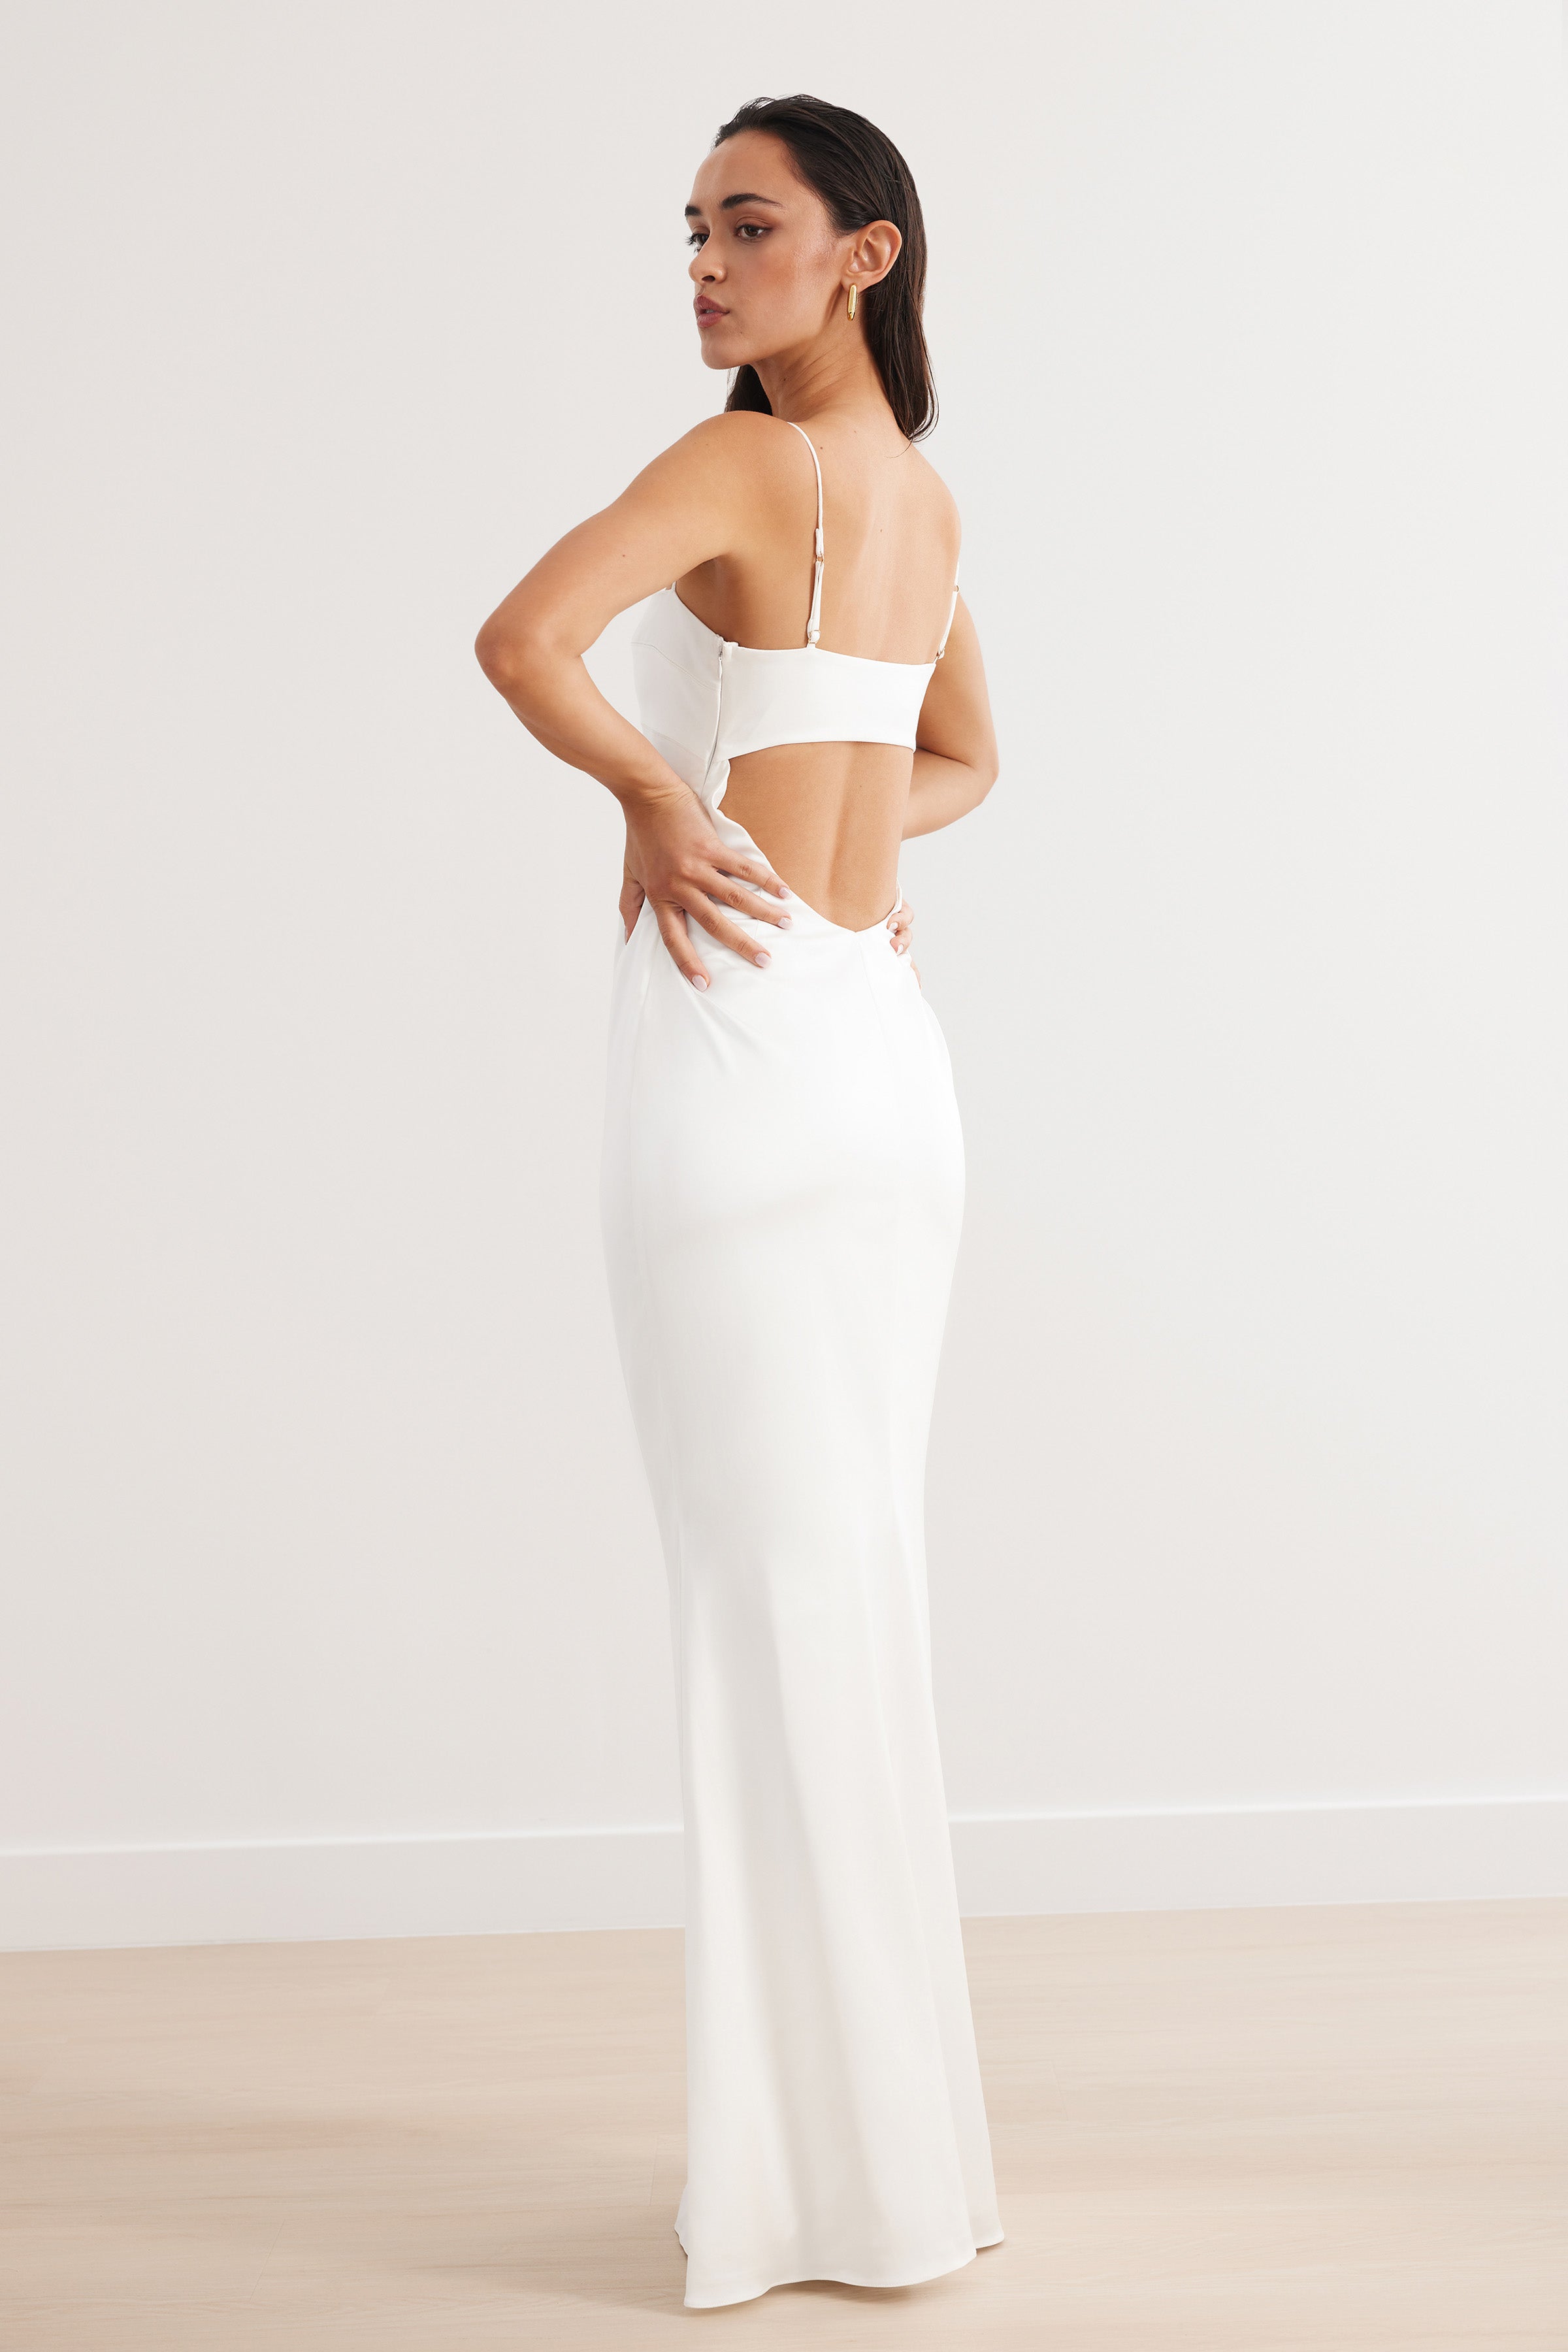 Avani Dress - White